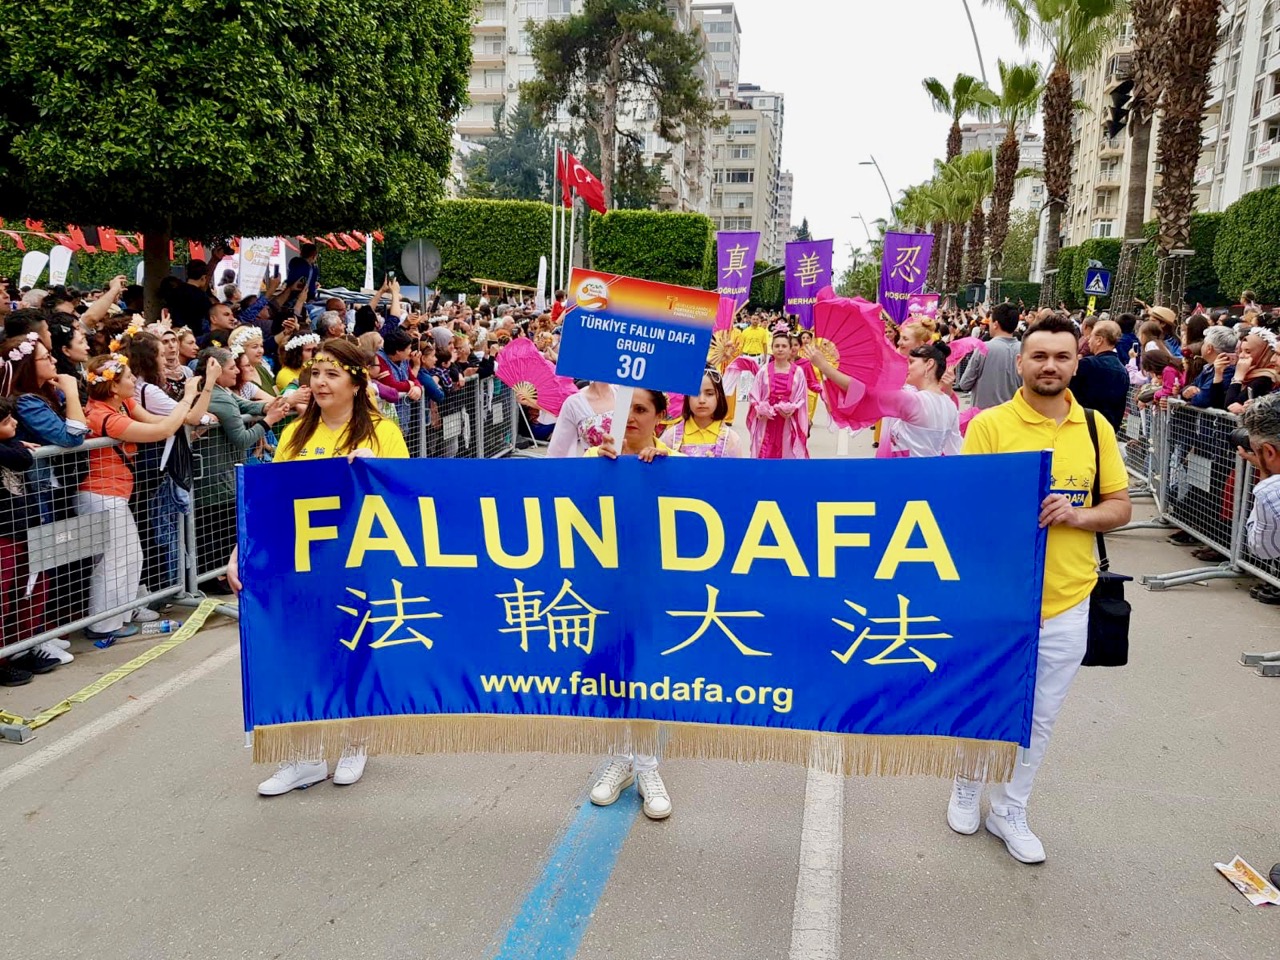 Image for article Turquie : Le Falun Dafa suscite un grand intérêt lors du Festival international de la fleur d'oranger